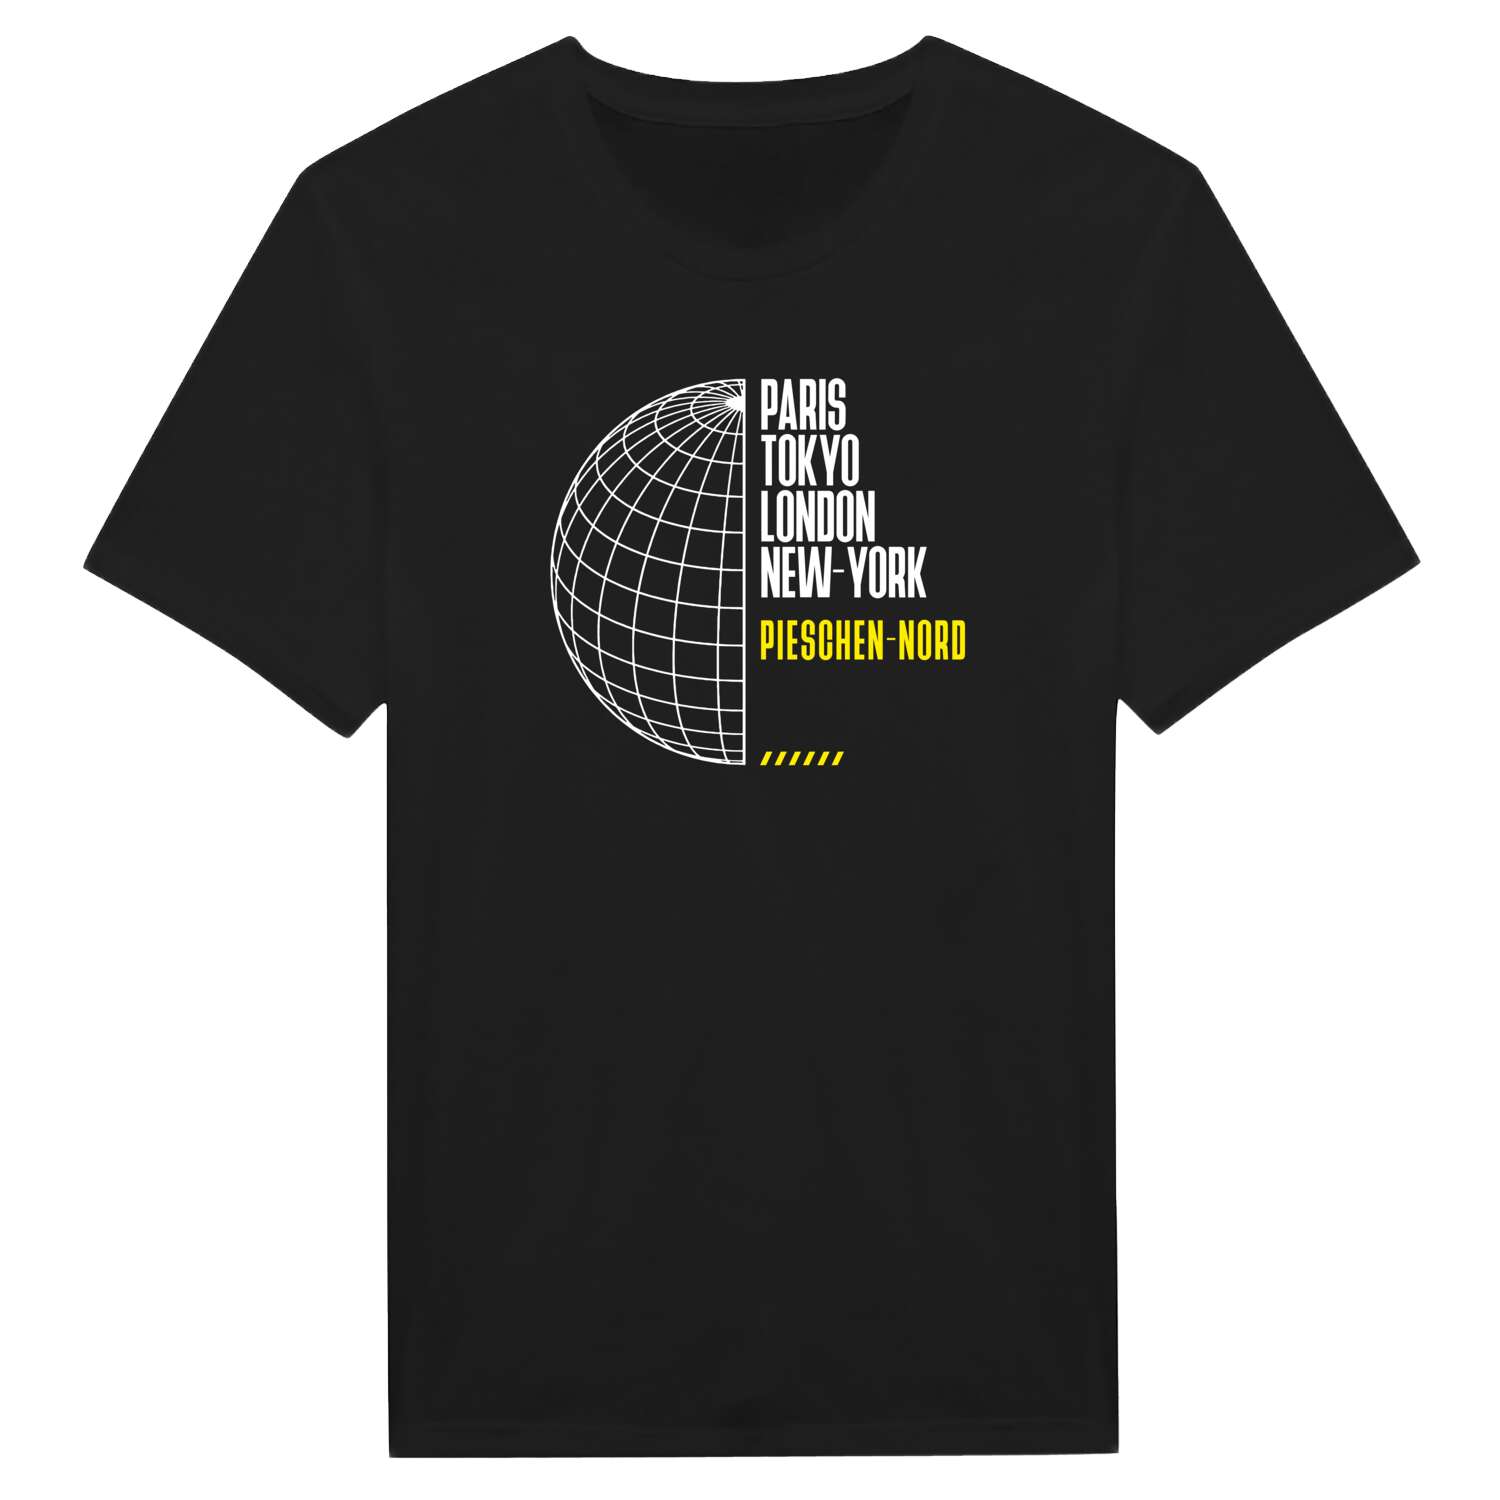 Pieschen-Nord T-Shirt »Paris Tokyo London«